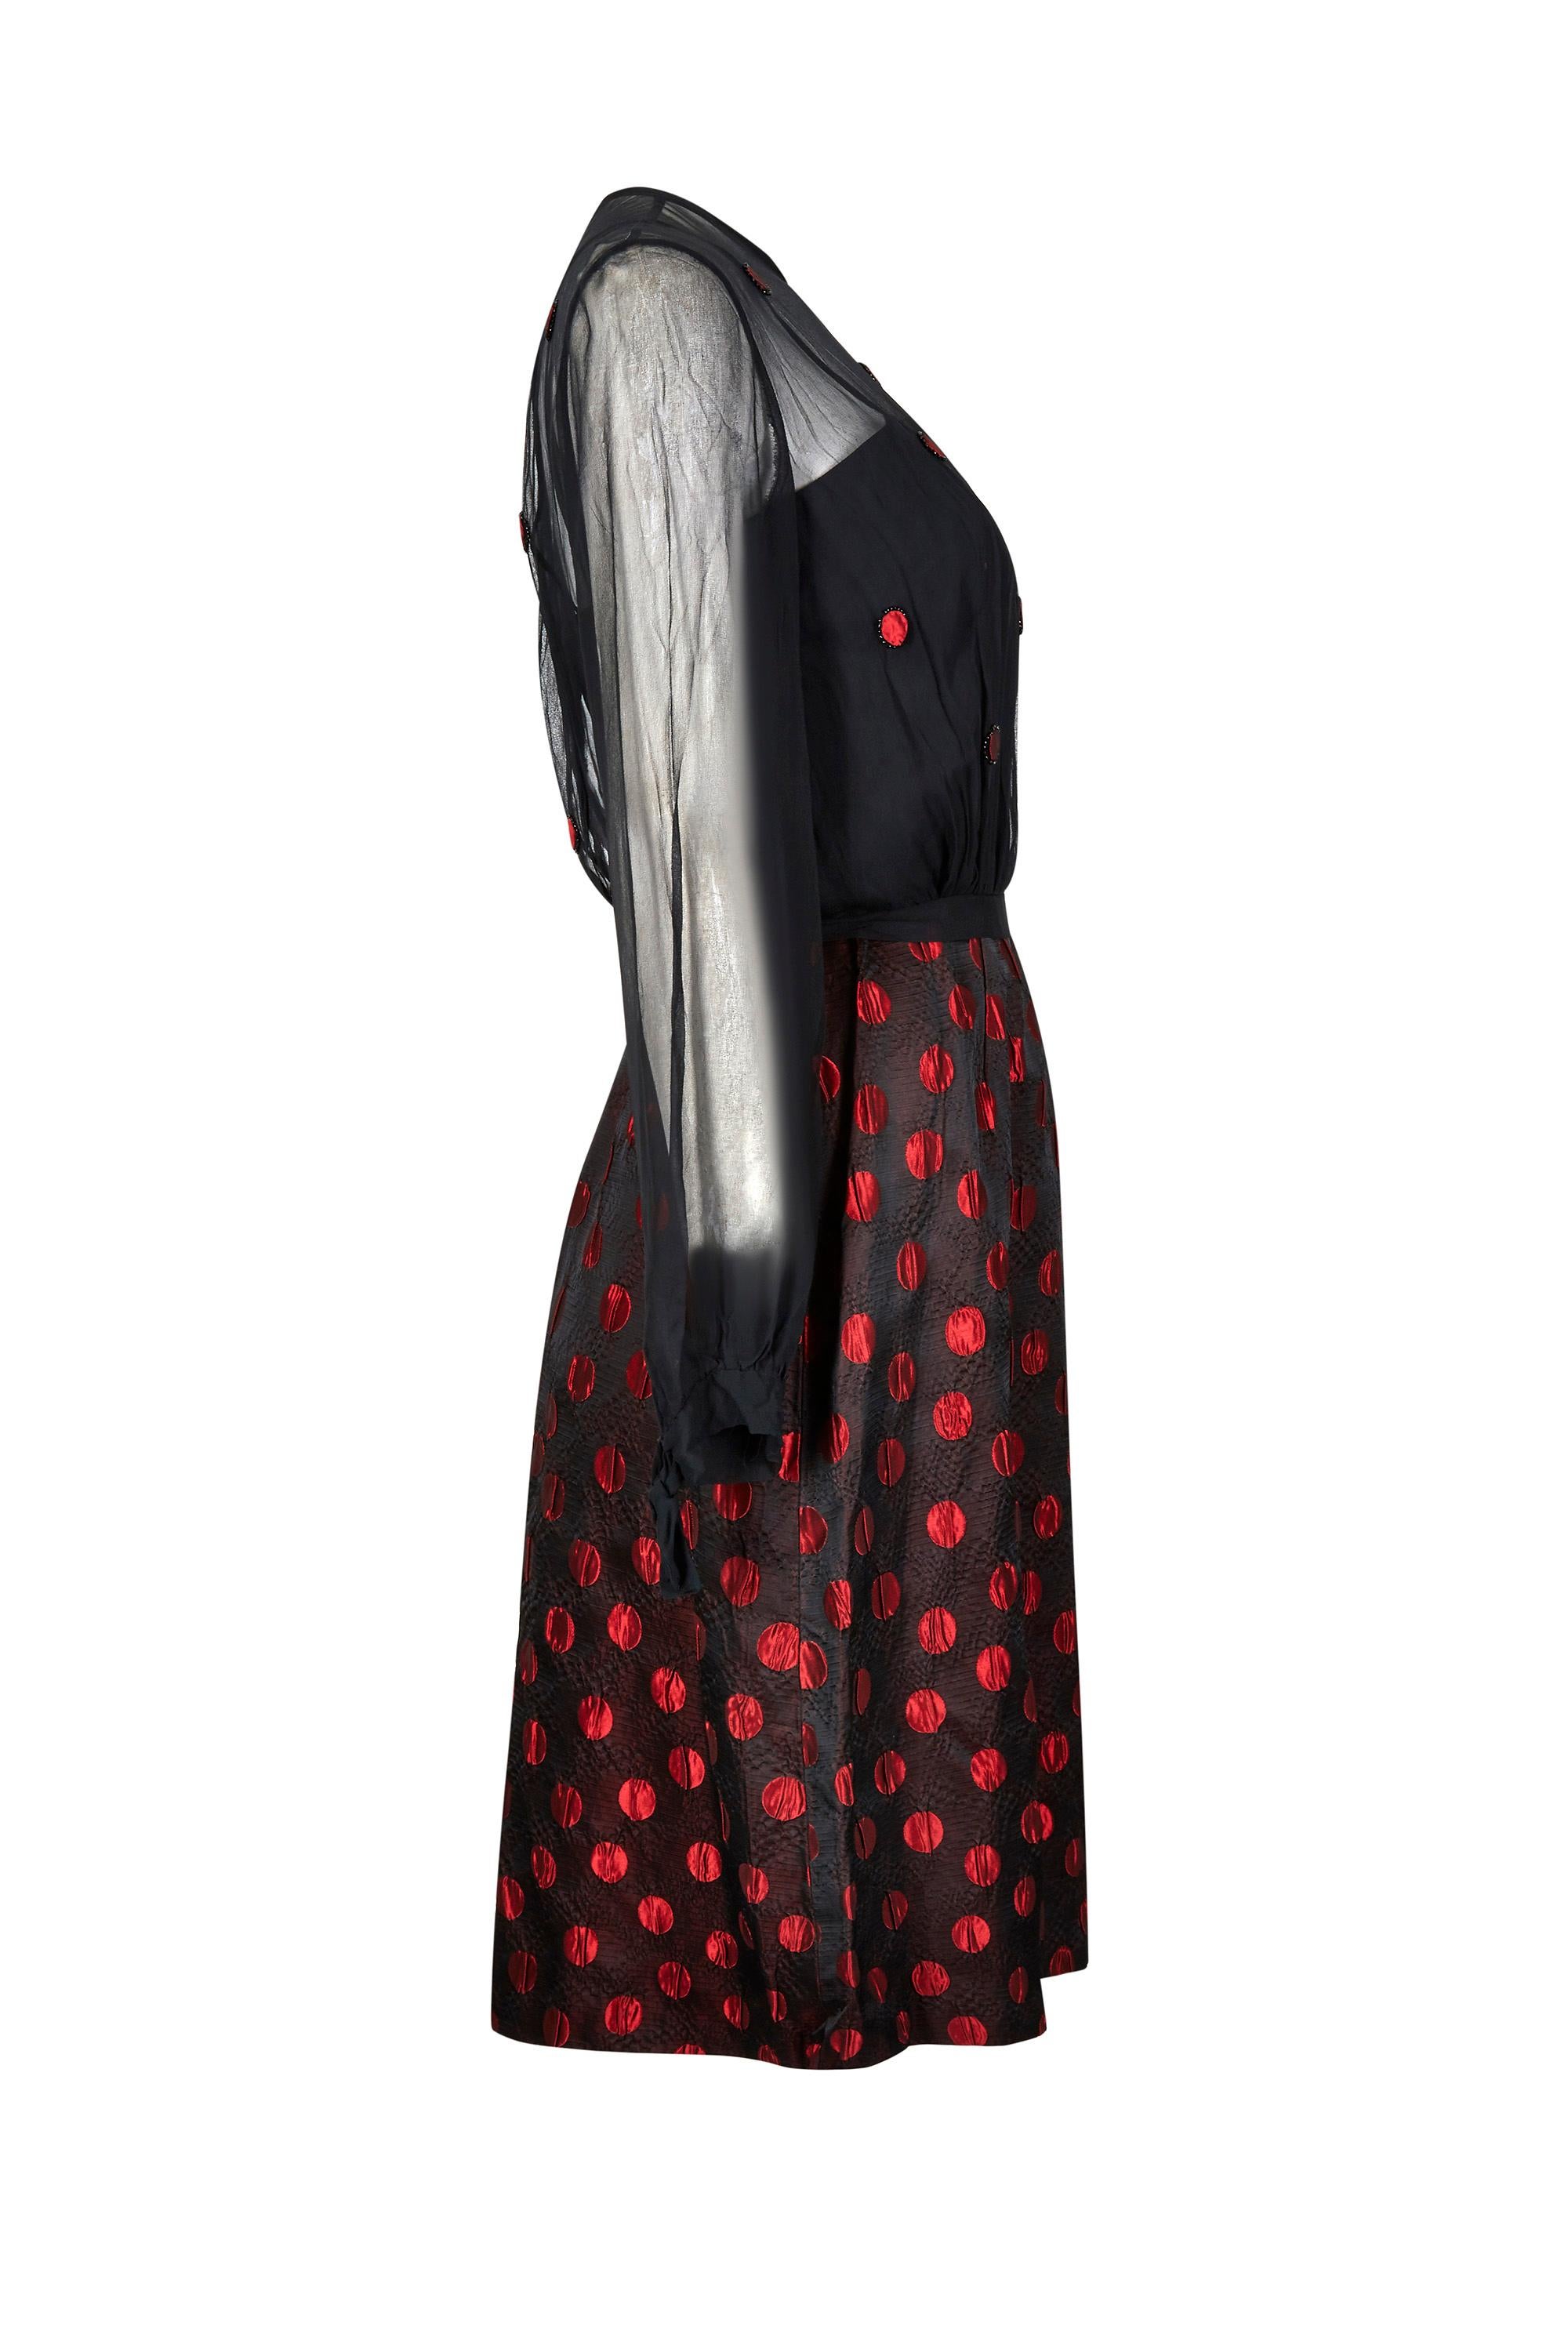 Dieses rot-schwarz gepunktete amerikanische Demi-Couture-Ensemble aus den 1960er Jahren ist in schönem Vintage-Zustand und von hervorragender Qualität; es ist jedoch nicht beschriftet, so dass der Designer unbekannt bleibt. Das Set besteht aus einem